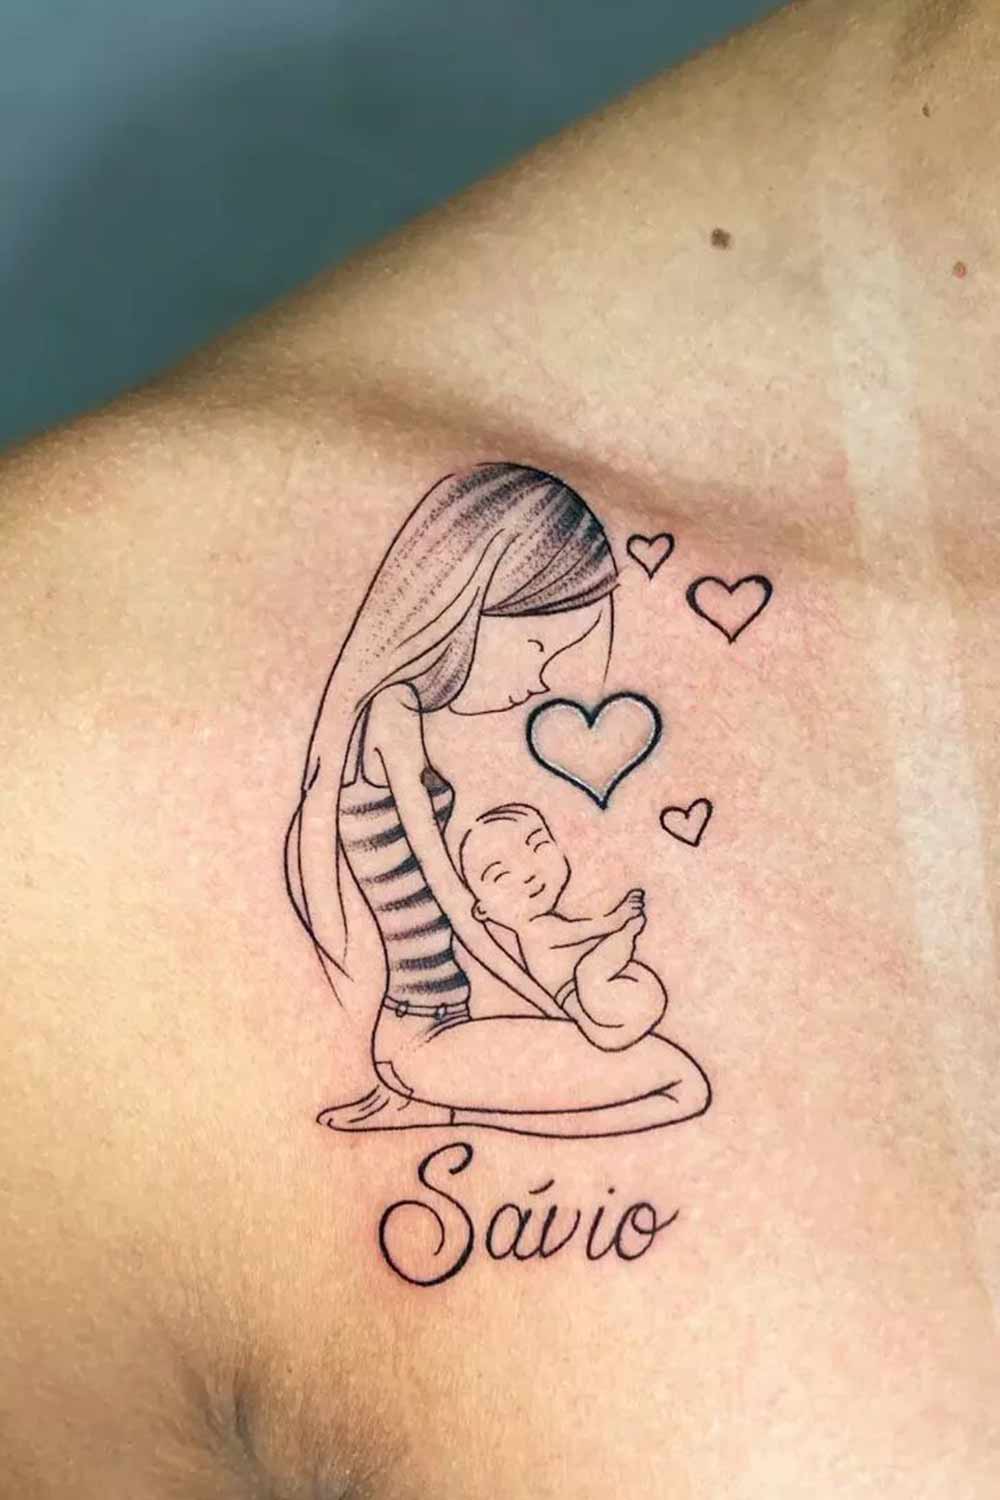 tatuagem-em-homenagem-ao-filho-1 